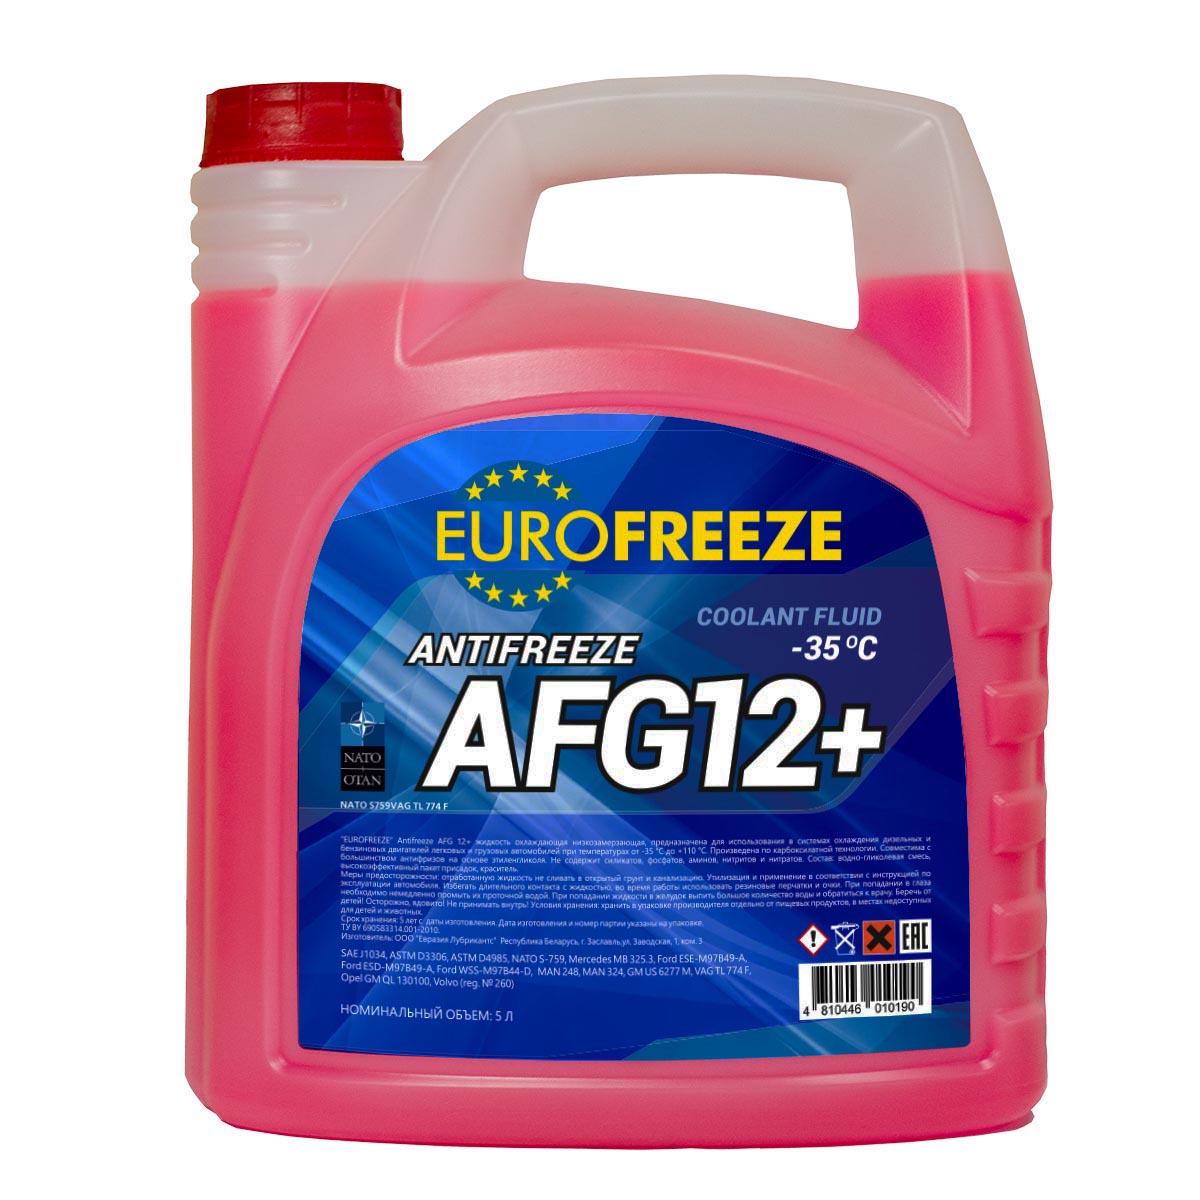 Eurofreeze Antifreeze AFG 12+ | FAVORIT - Производитель. Моторные масла .